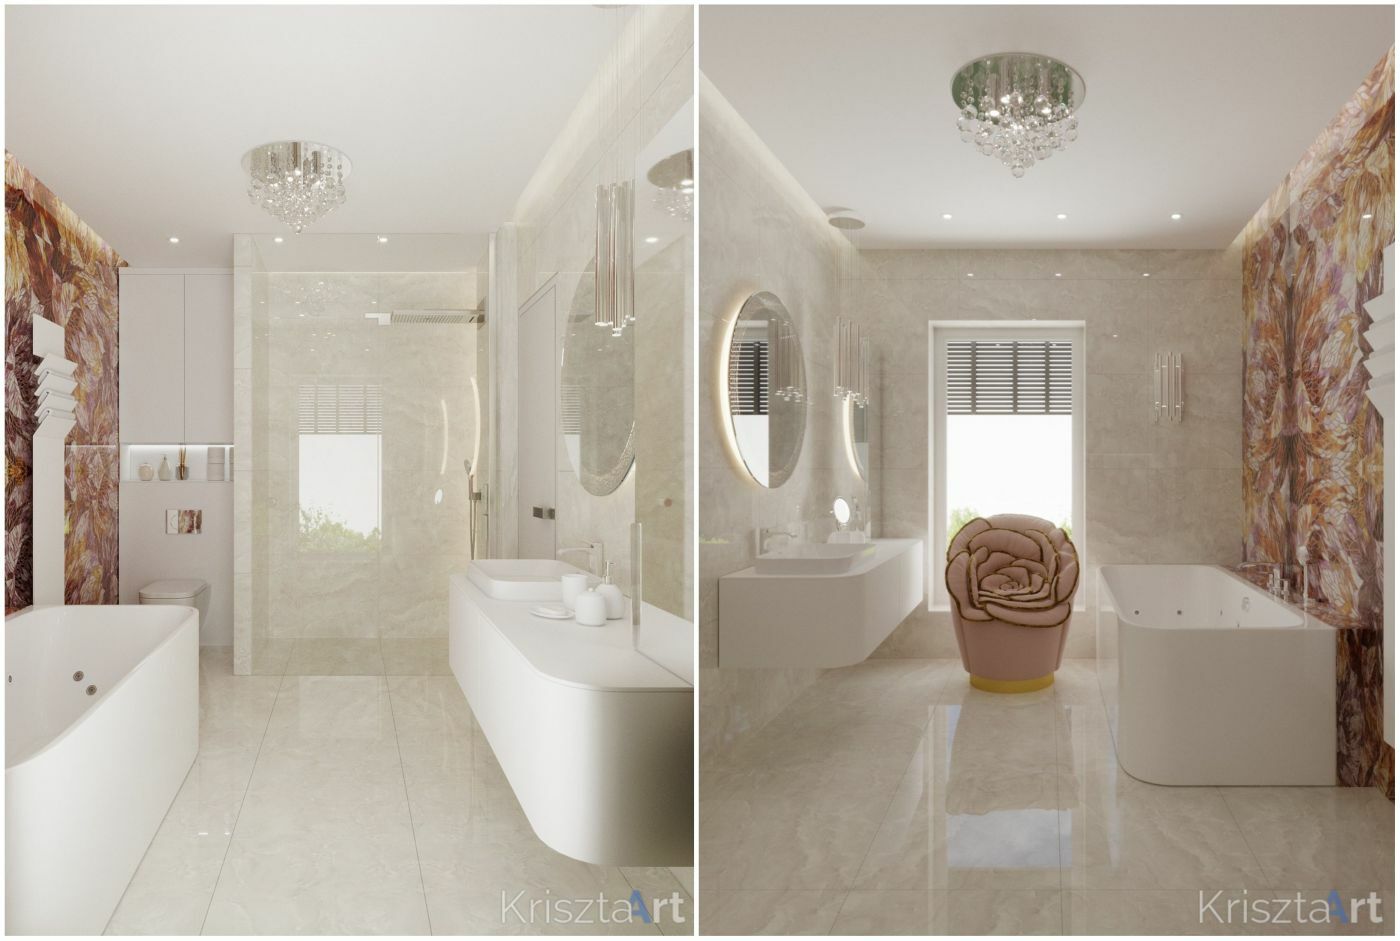 Fürdőszoba különleges burkolattal és rózsa formájú fotellel